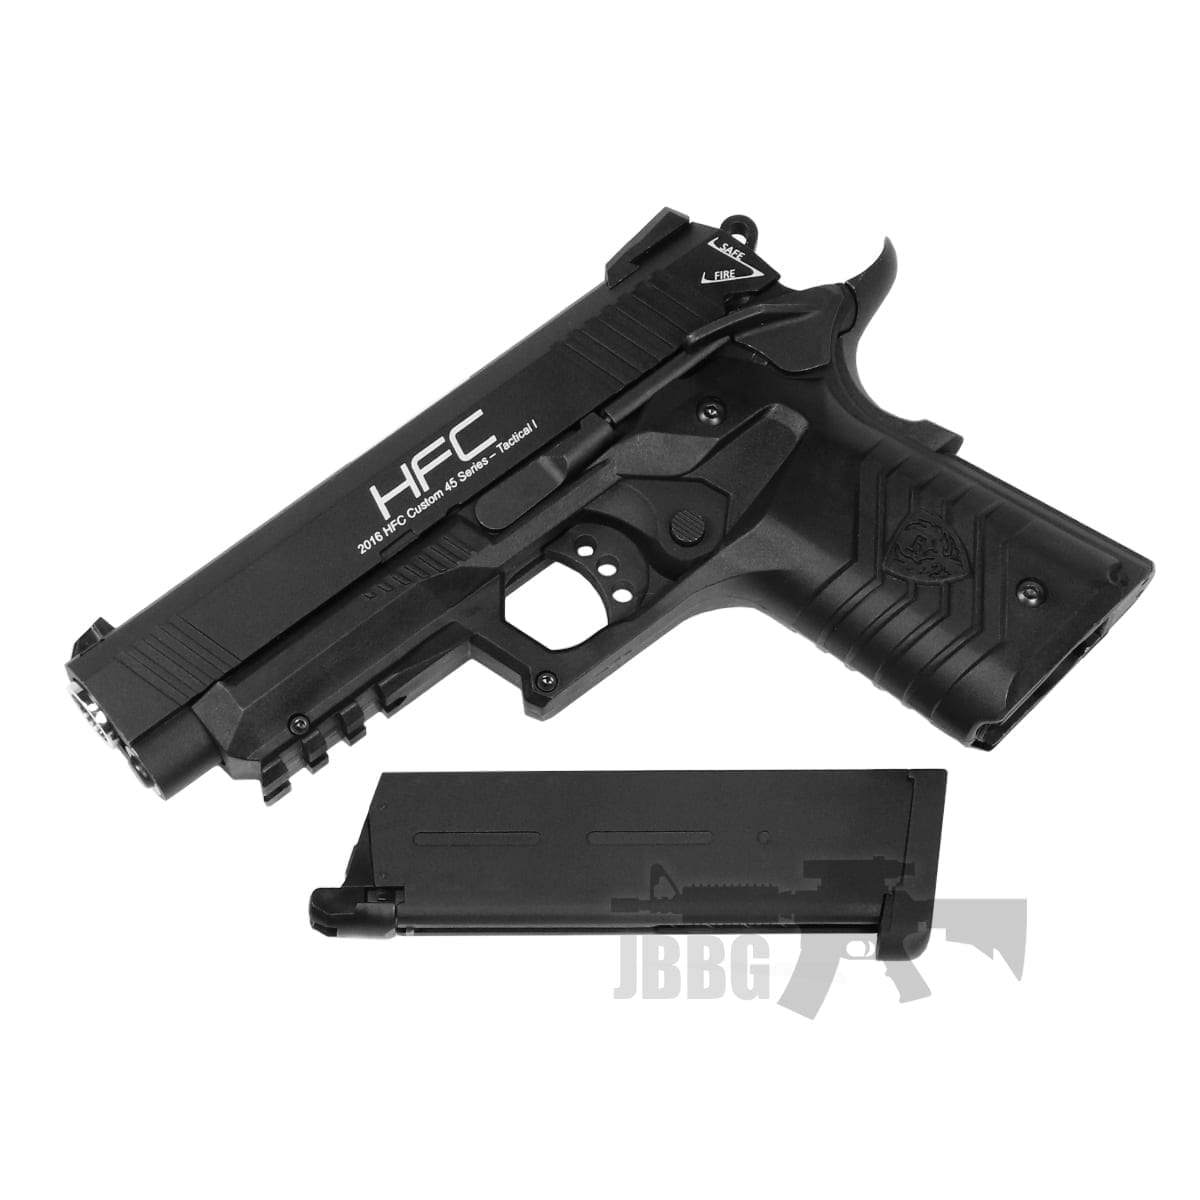 hg171b airsoft pistol black at just bb guns 3